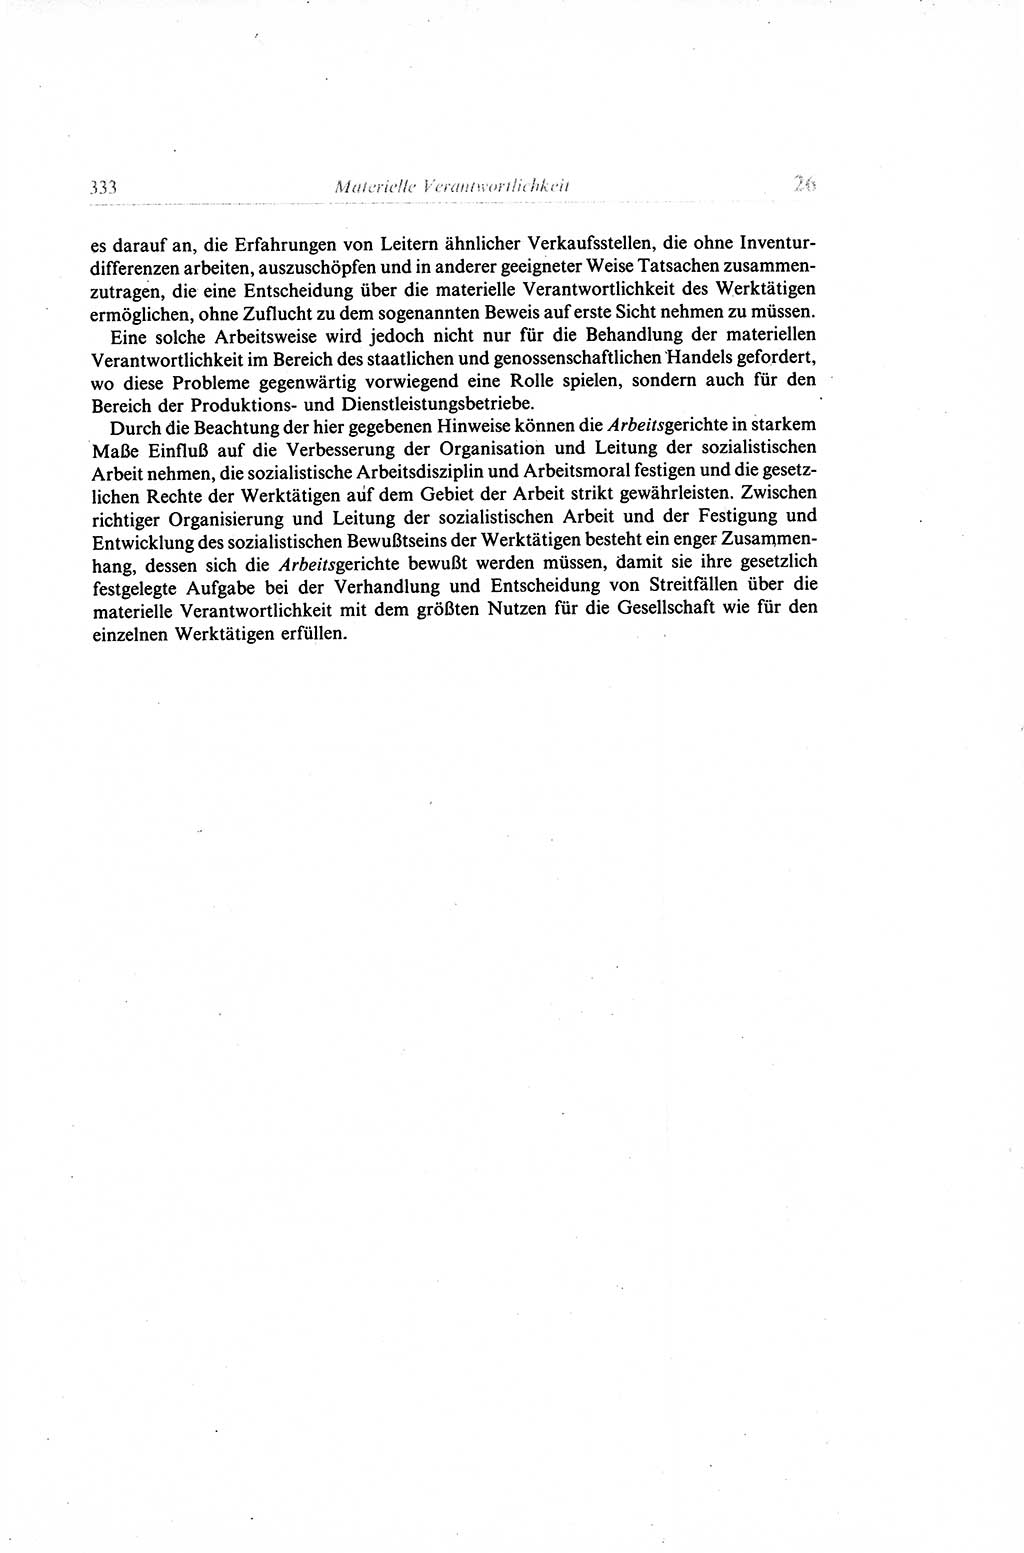 Gesetzbuch der Arbeit (GBA) und andere ausgewählte rechtliche Bestimmungen [Deutsche Demokratische Republik (DDR)] 1968, Seite 333 (GBA DDR 1968, S. 333)